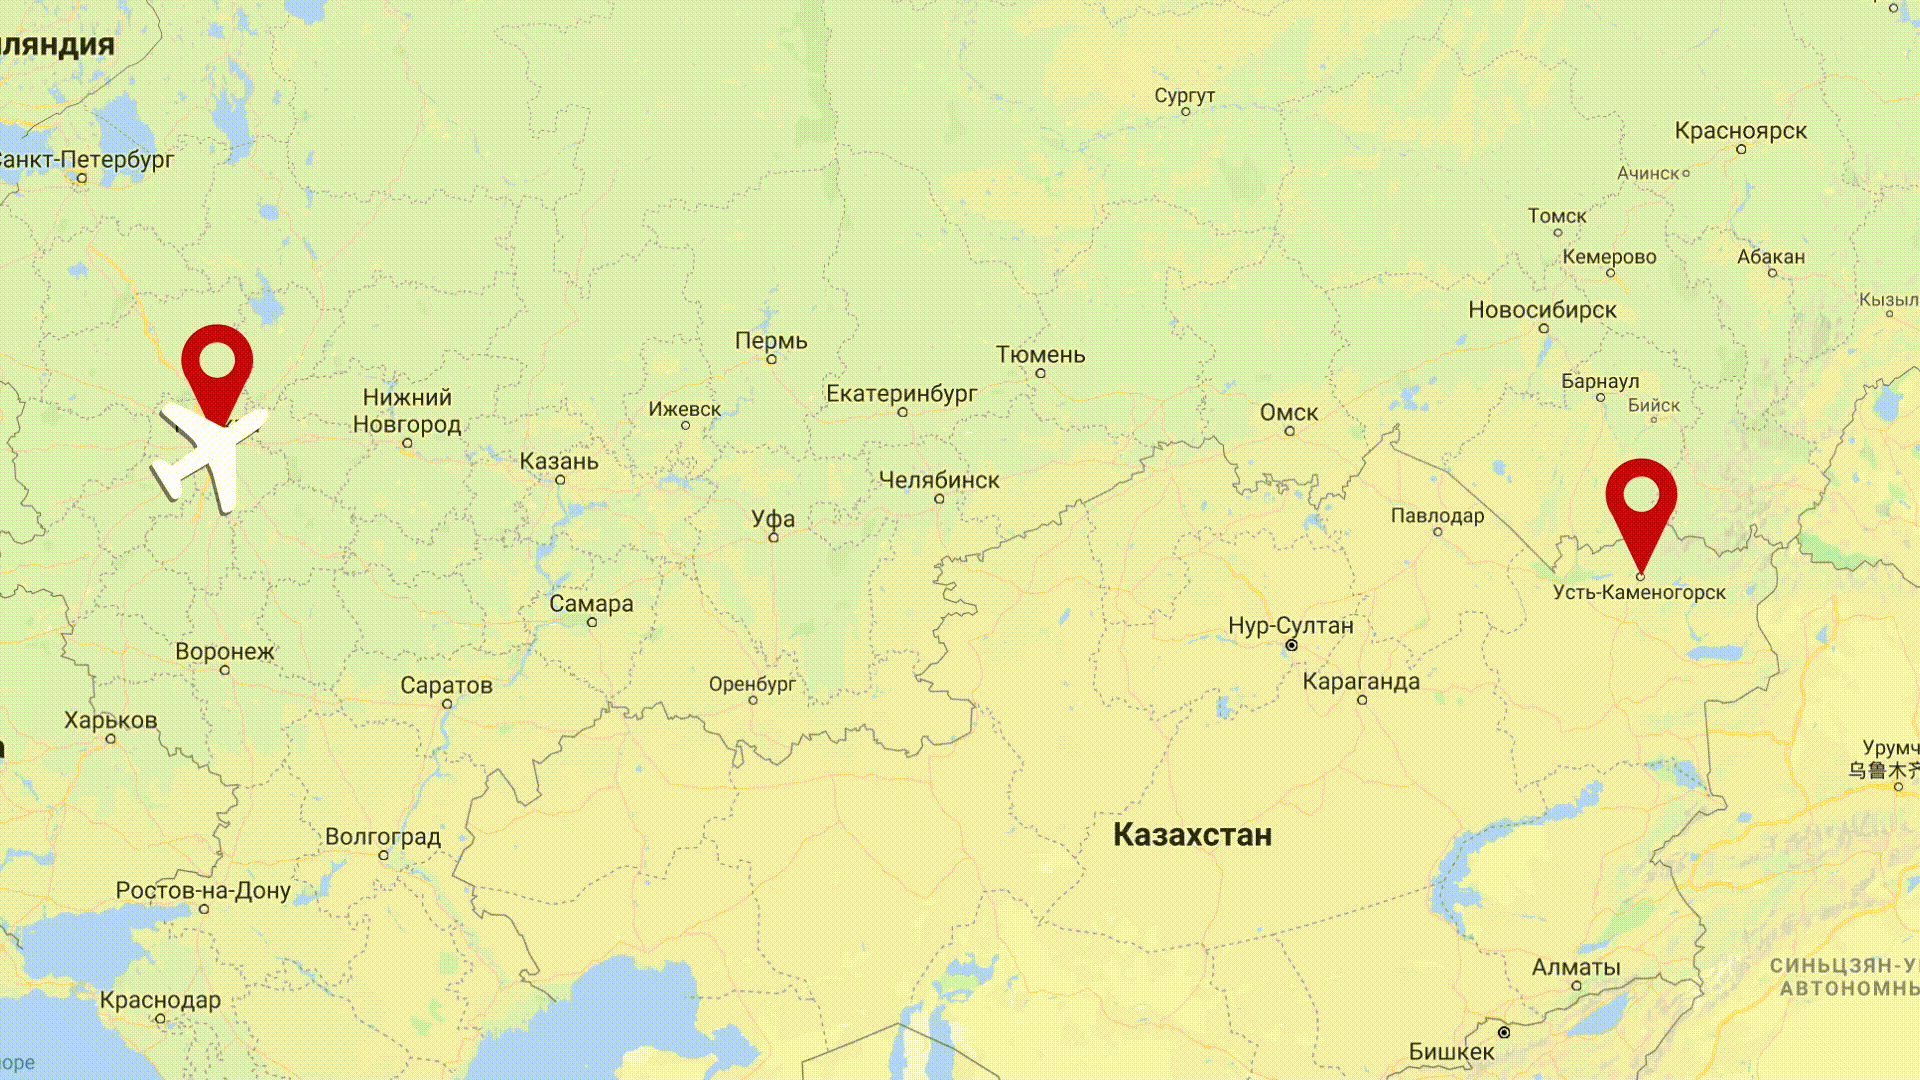 Место, куда нужно отправлять московских голддигерш на перевоспитание (на карьер)